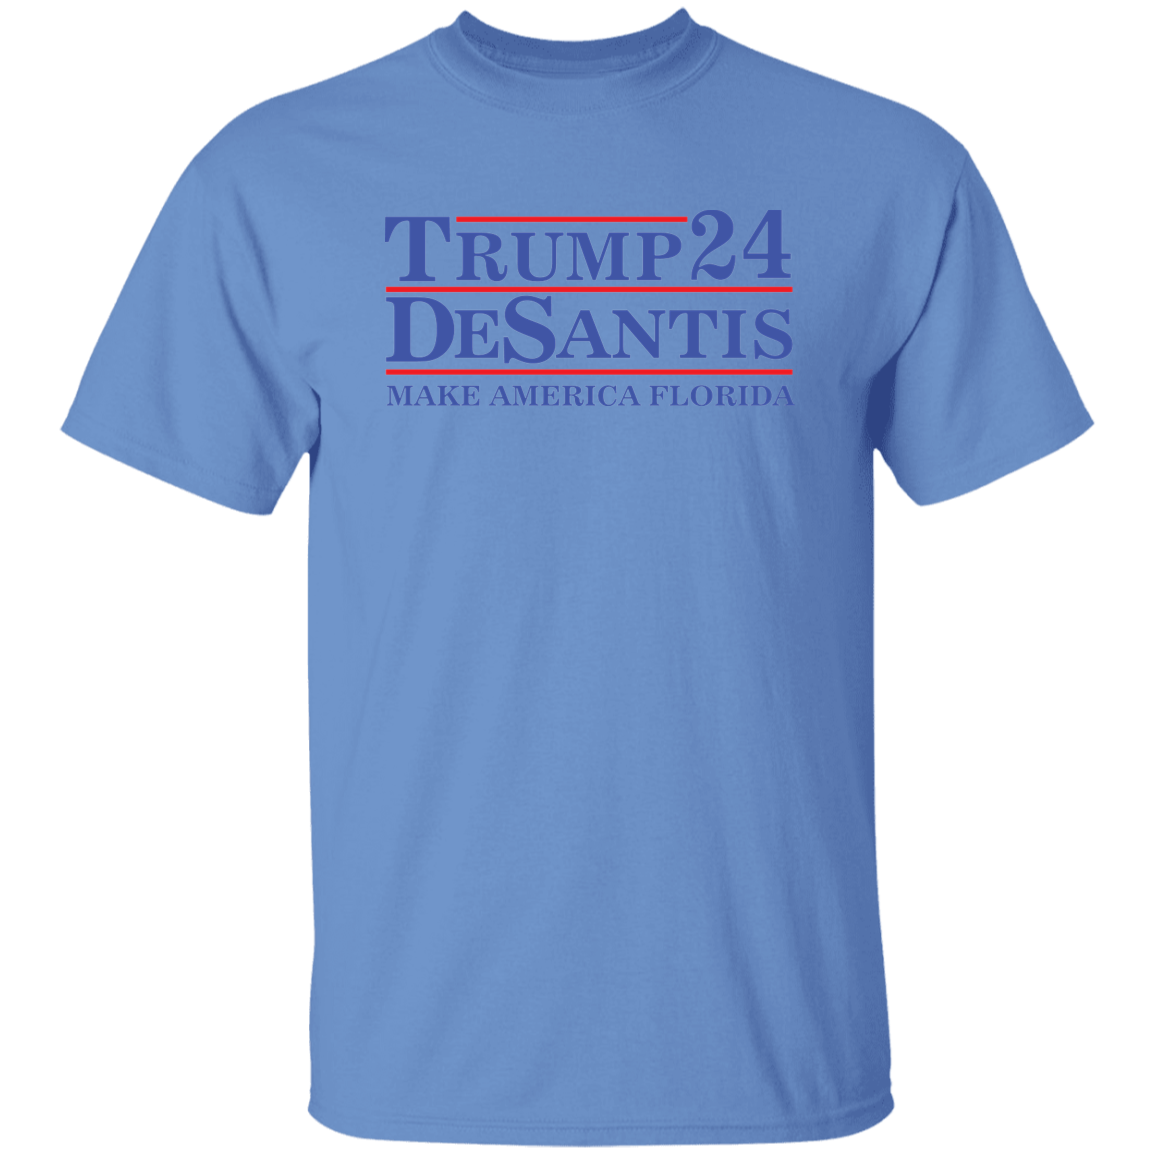 Trump DeSantis 24